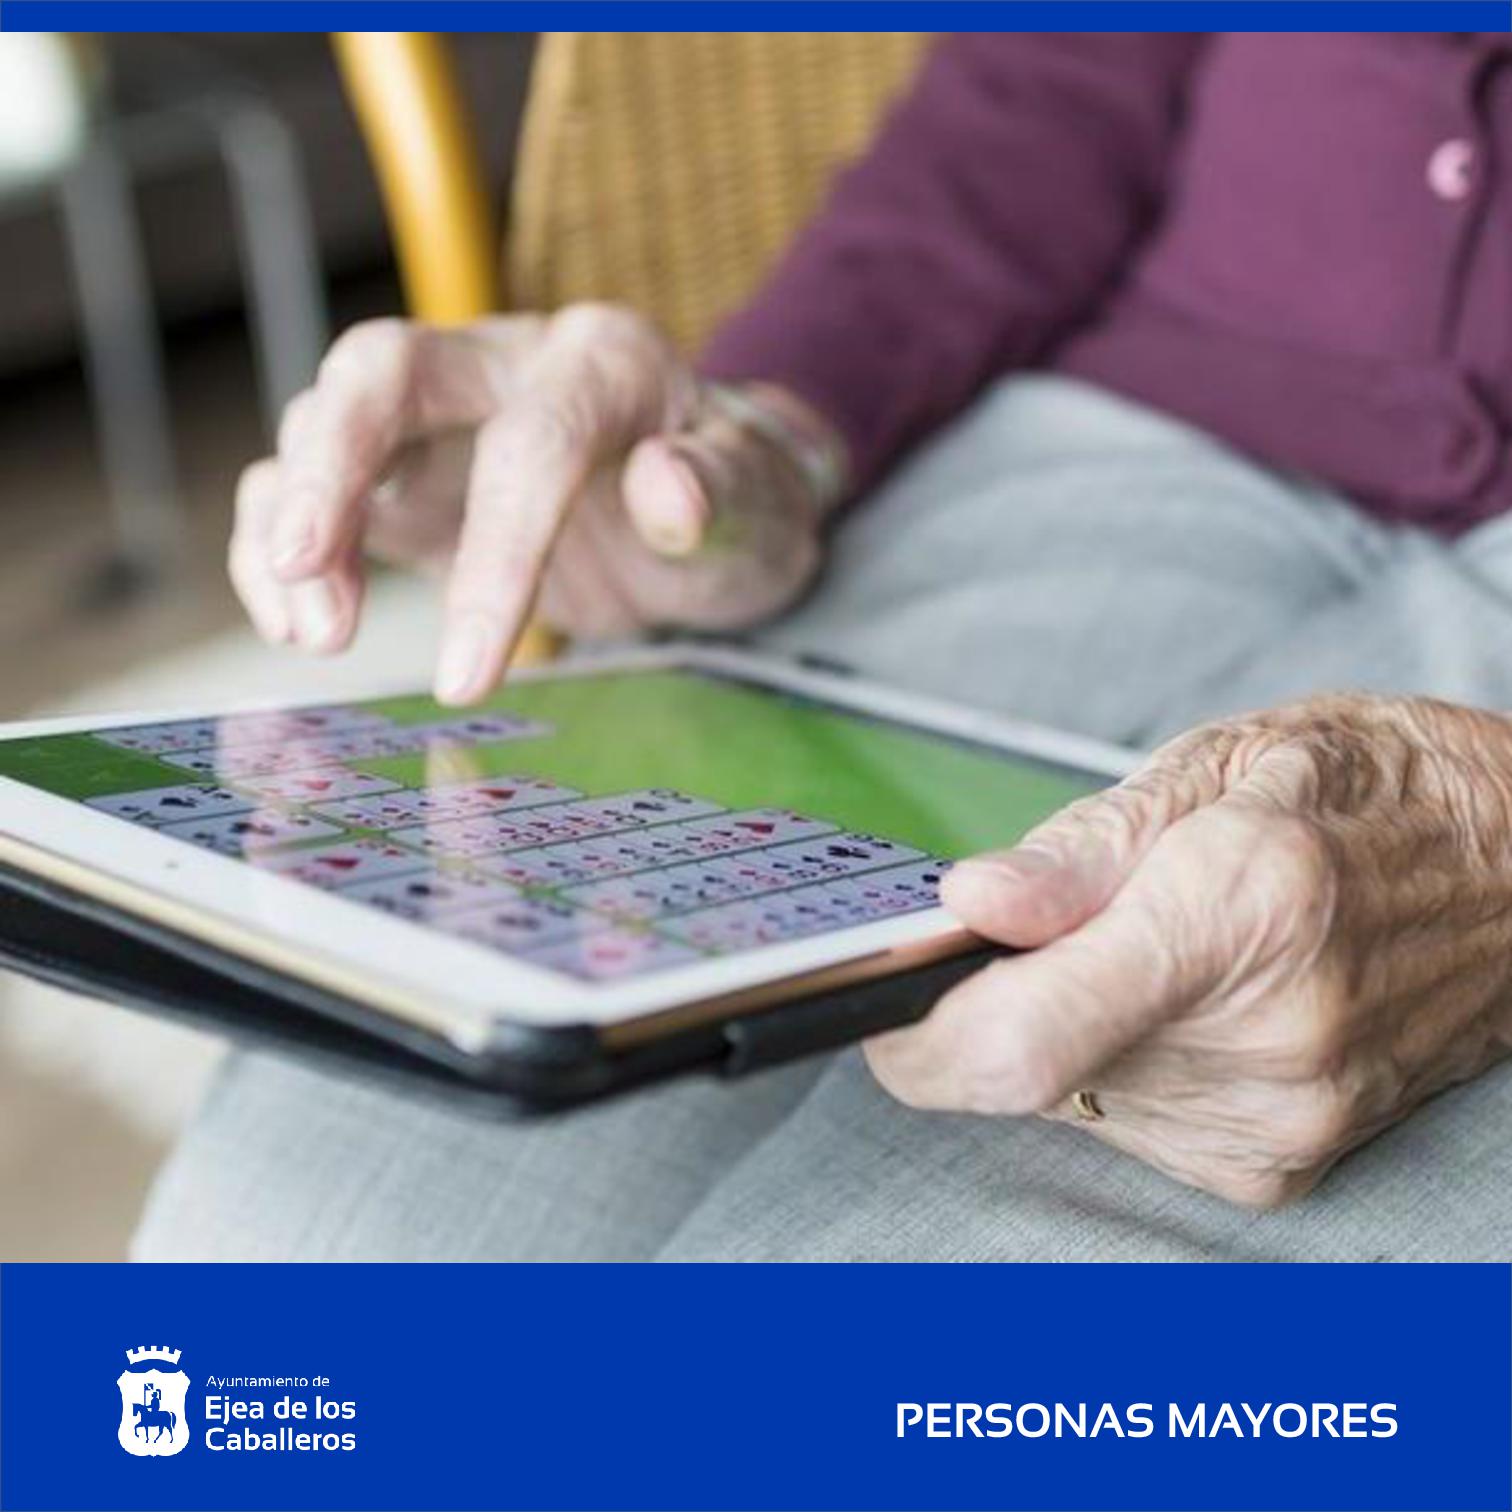 En este momento estás viendo El Ayuntamiento de Ejea de los Caballeros lucha contra la brecha digital de las personas mayores